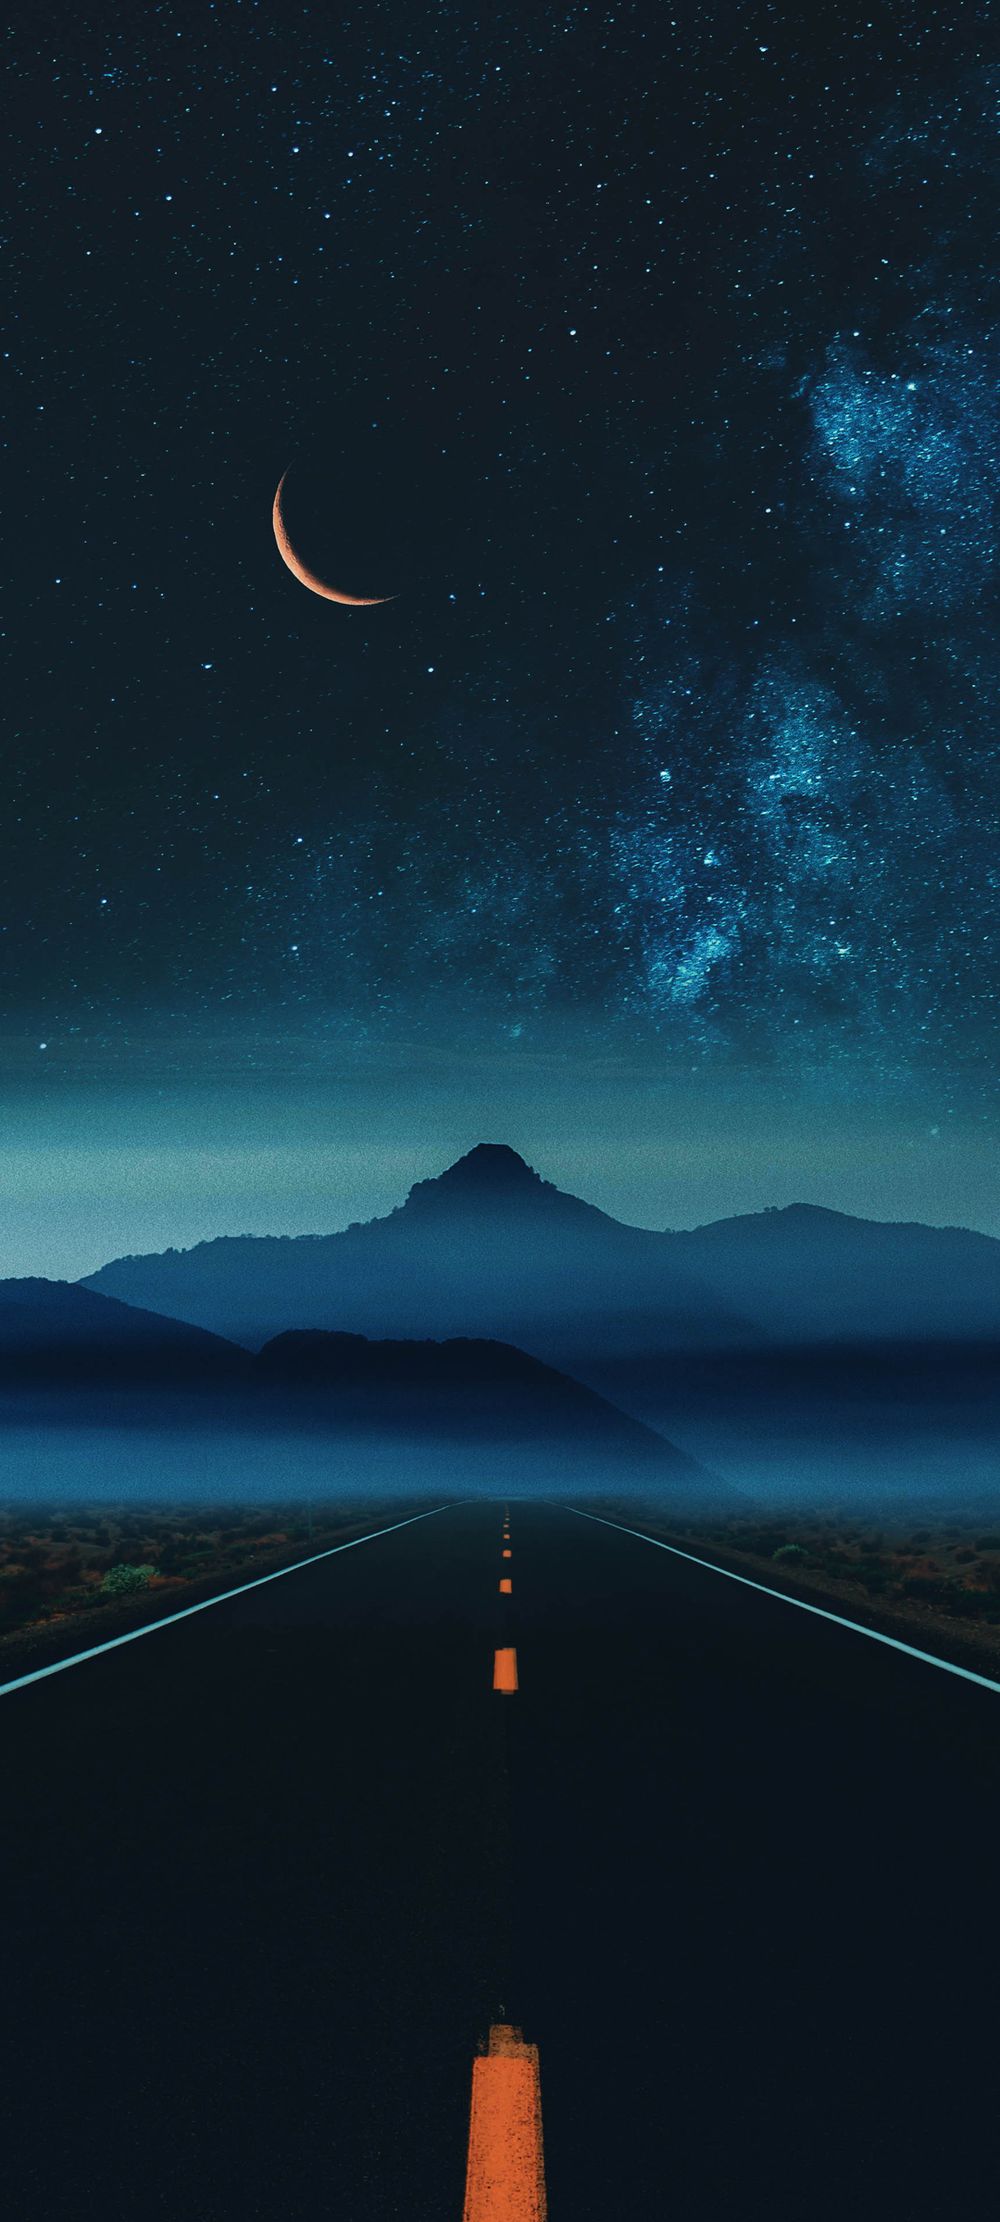 夜幕降临满天繁星的山间公路手机风景壁纸